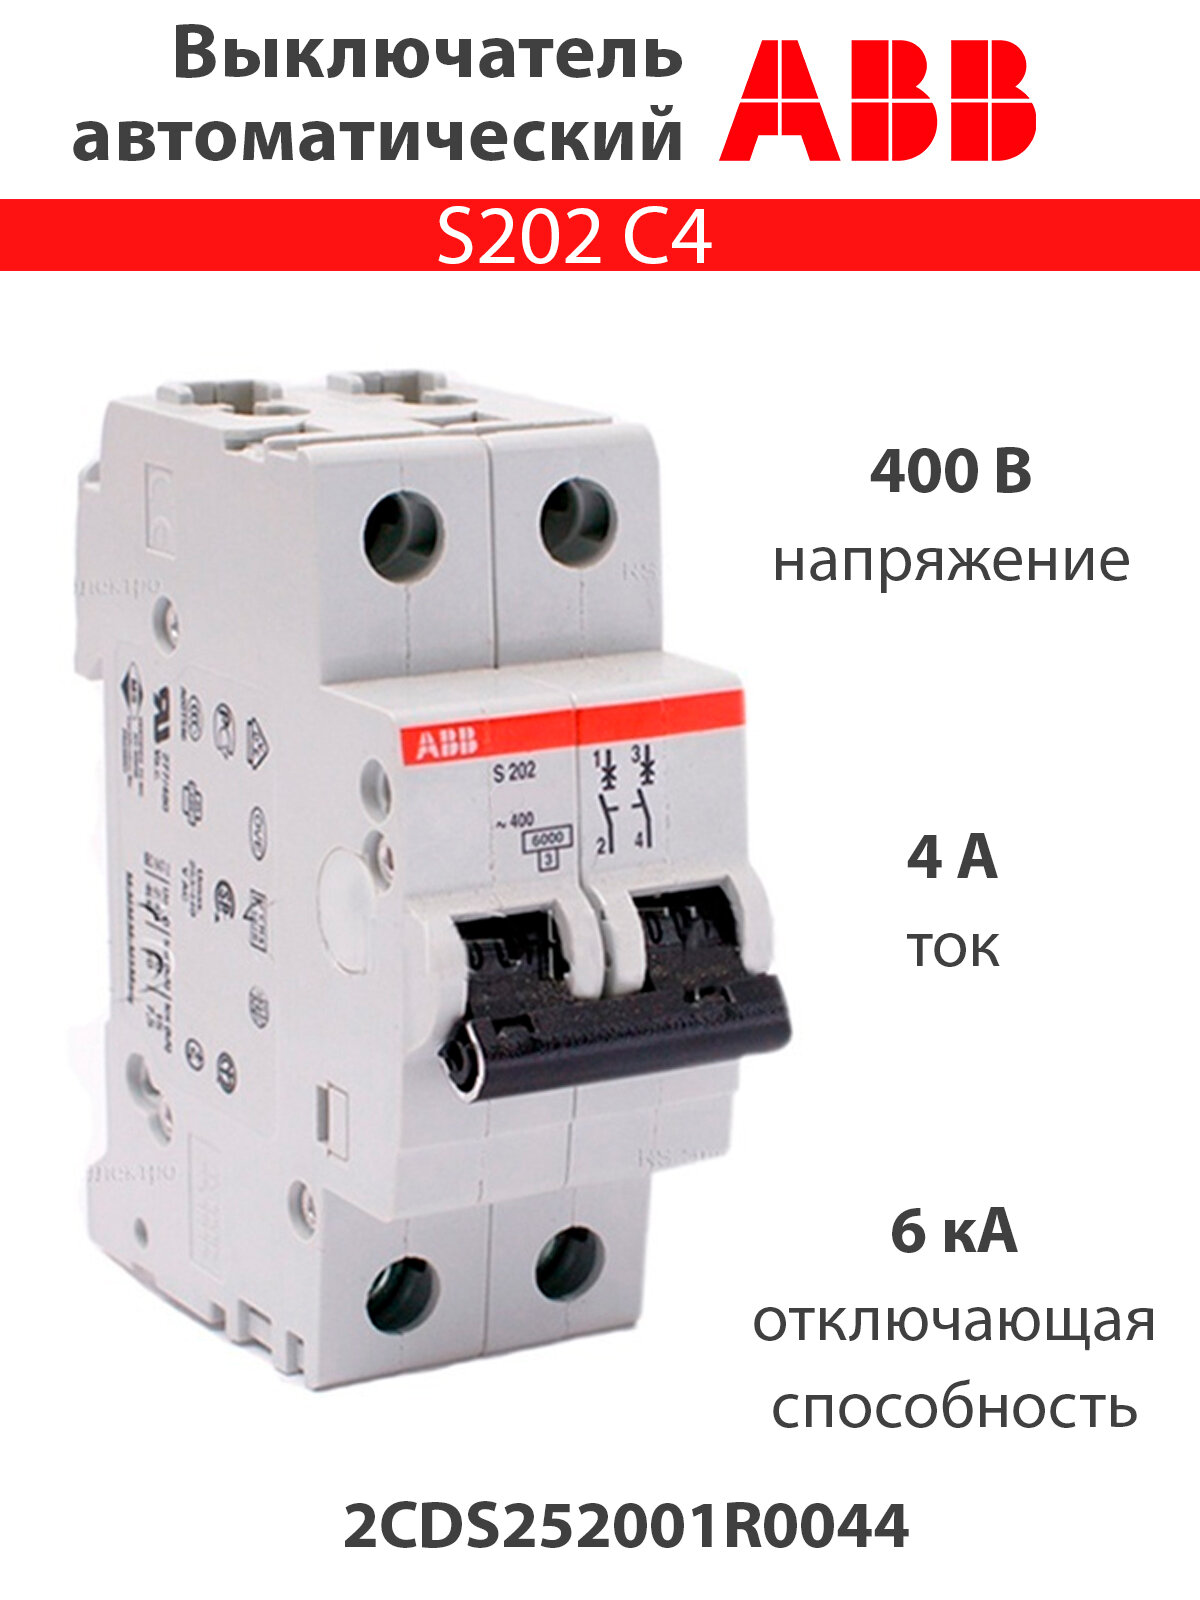 Выключатель автоматический двухполюсной S202 C4 6кА 2CDS252001R0044